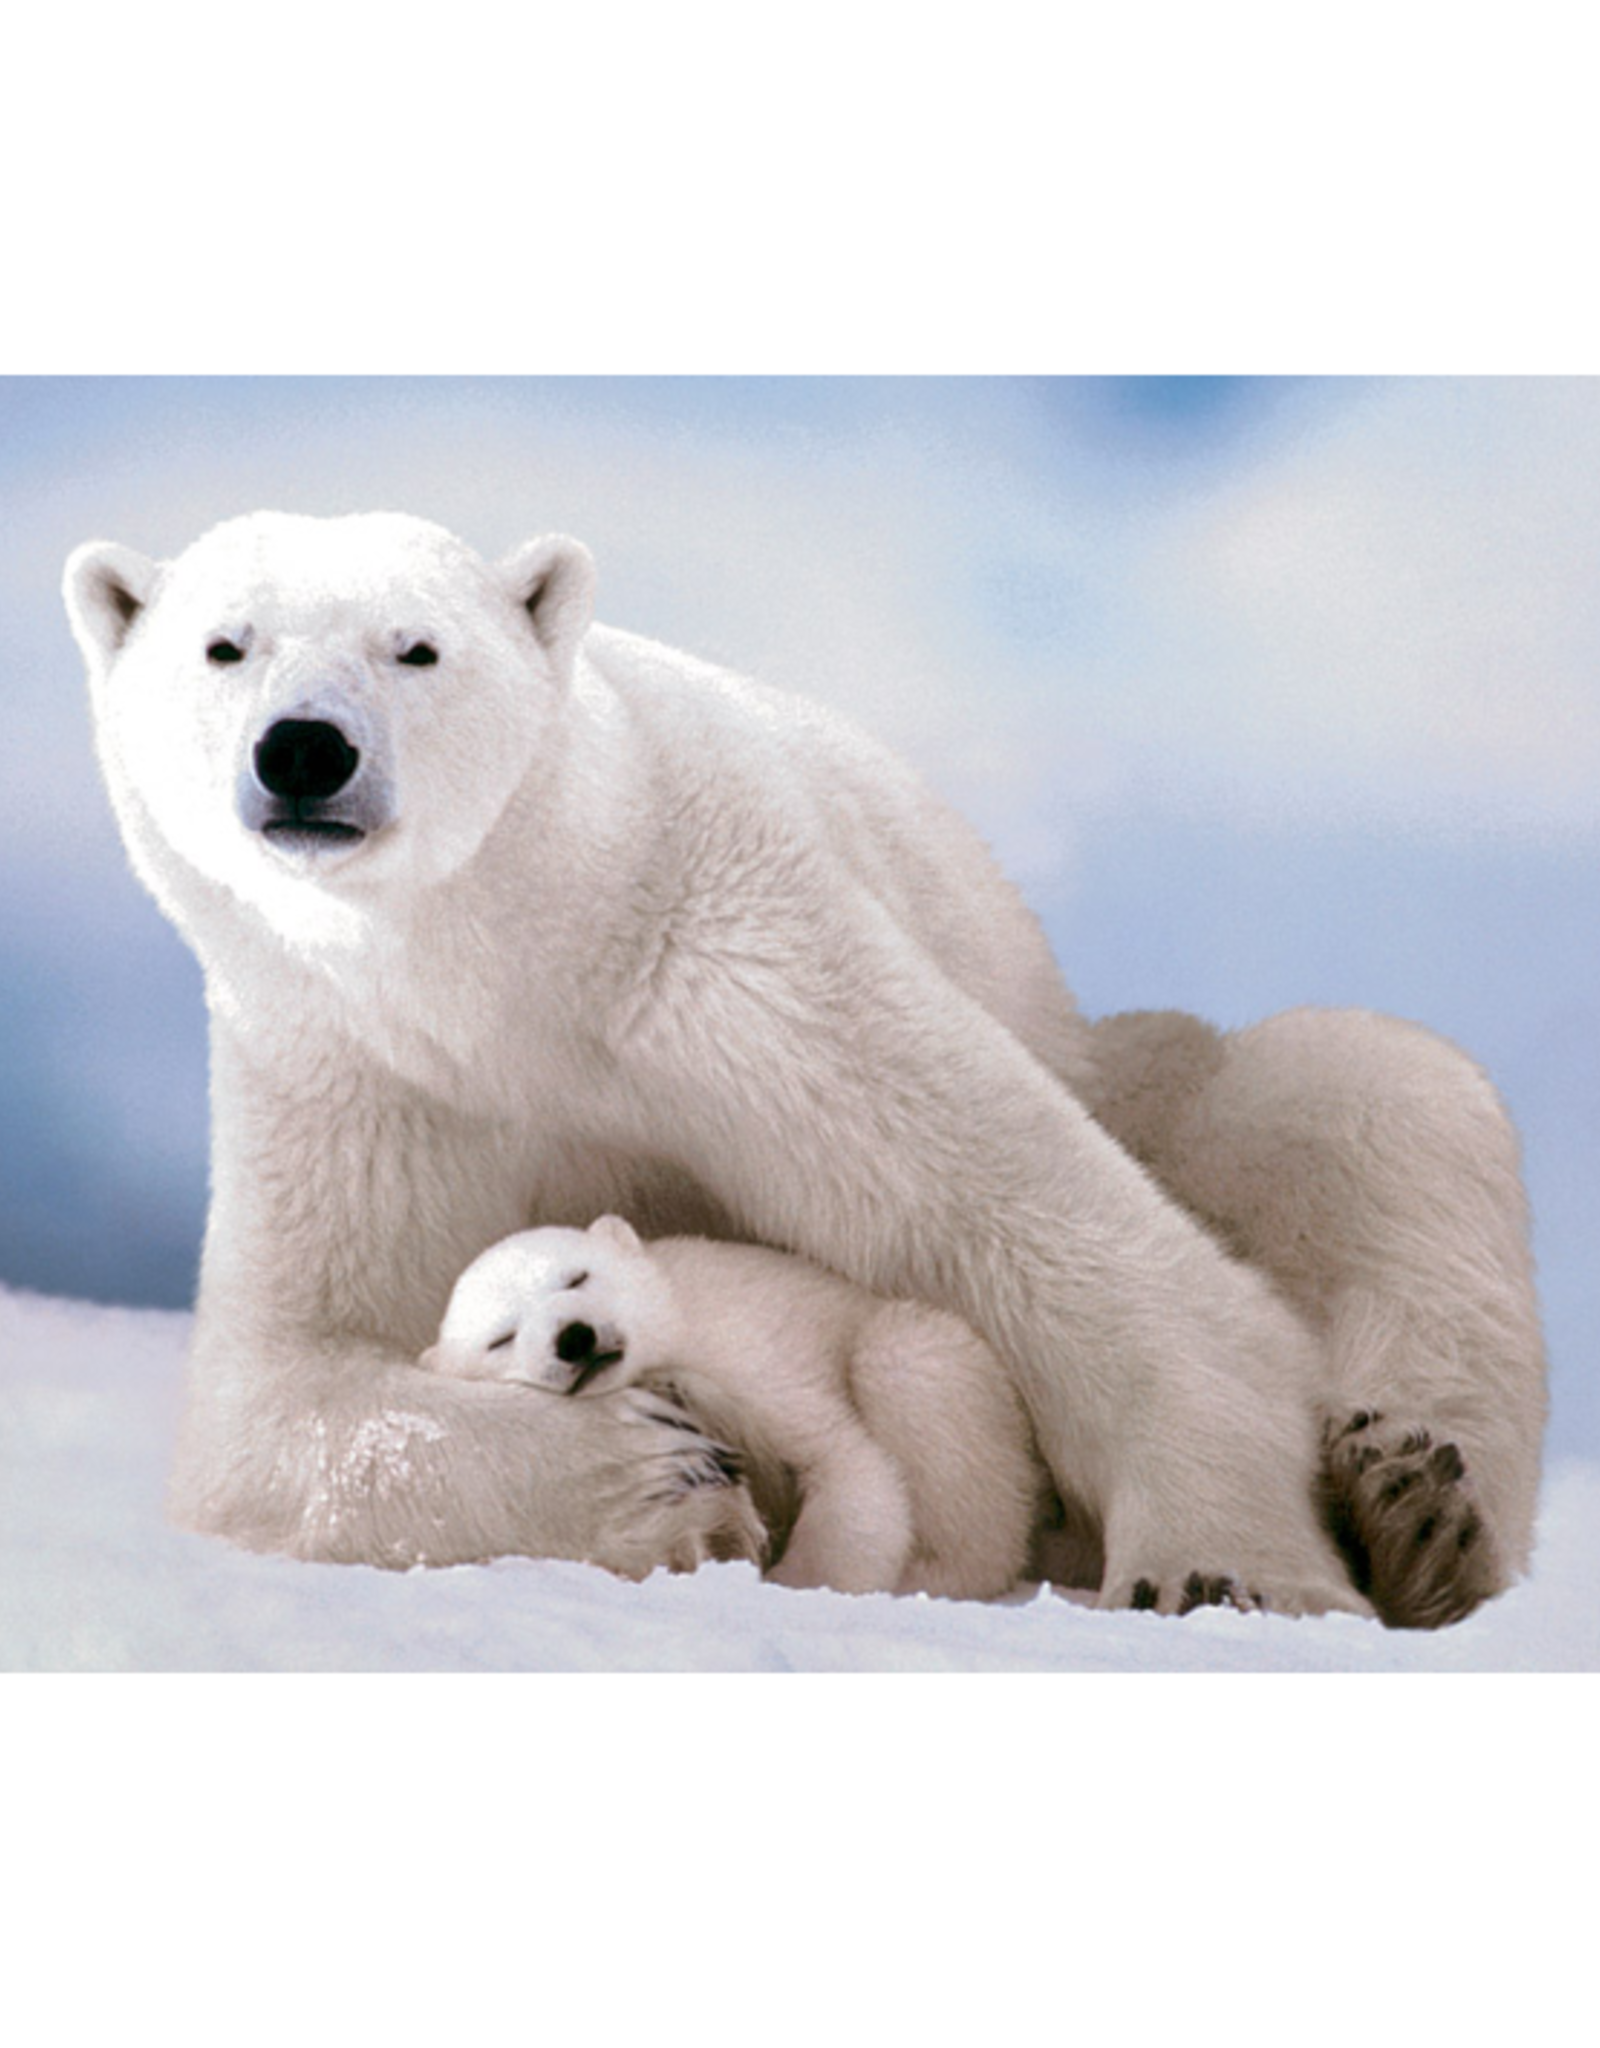 Eurographics - 1000pcs - Polar Bear and Baby